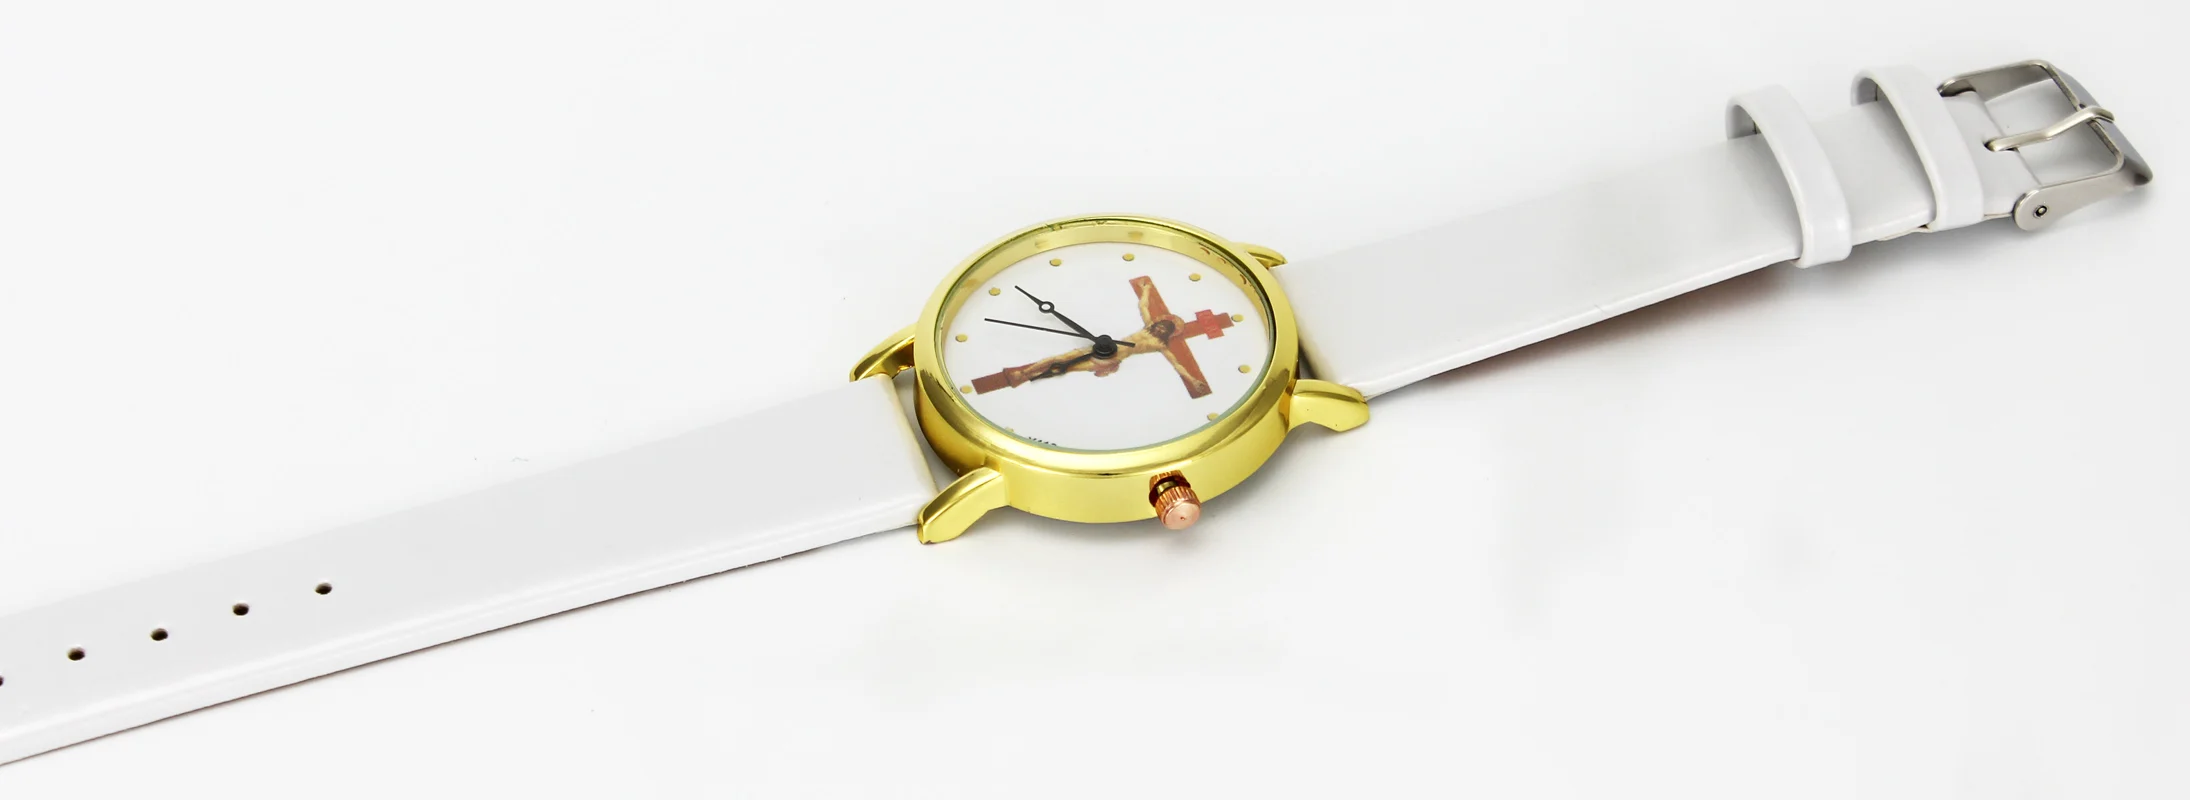 Часы на каждый день с крестиком Иисуса Христа, распятием, христианским христианством, религиозным чехлом, золотой чехол, наручные часы